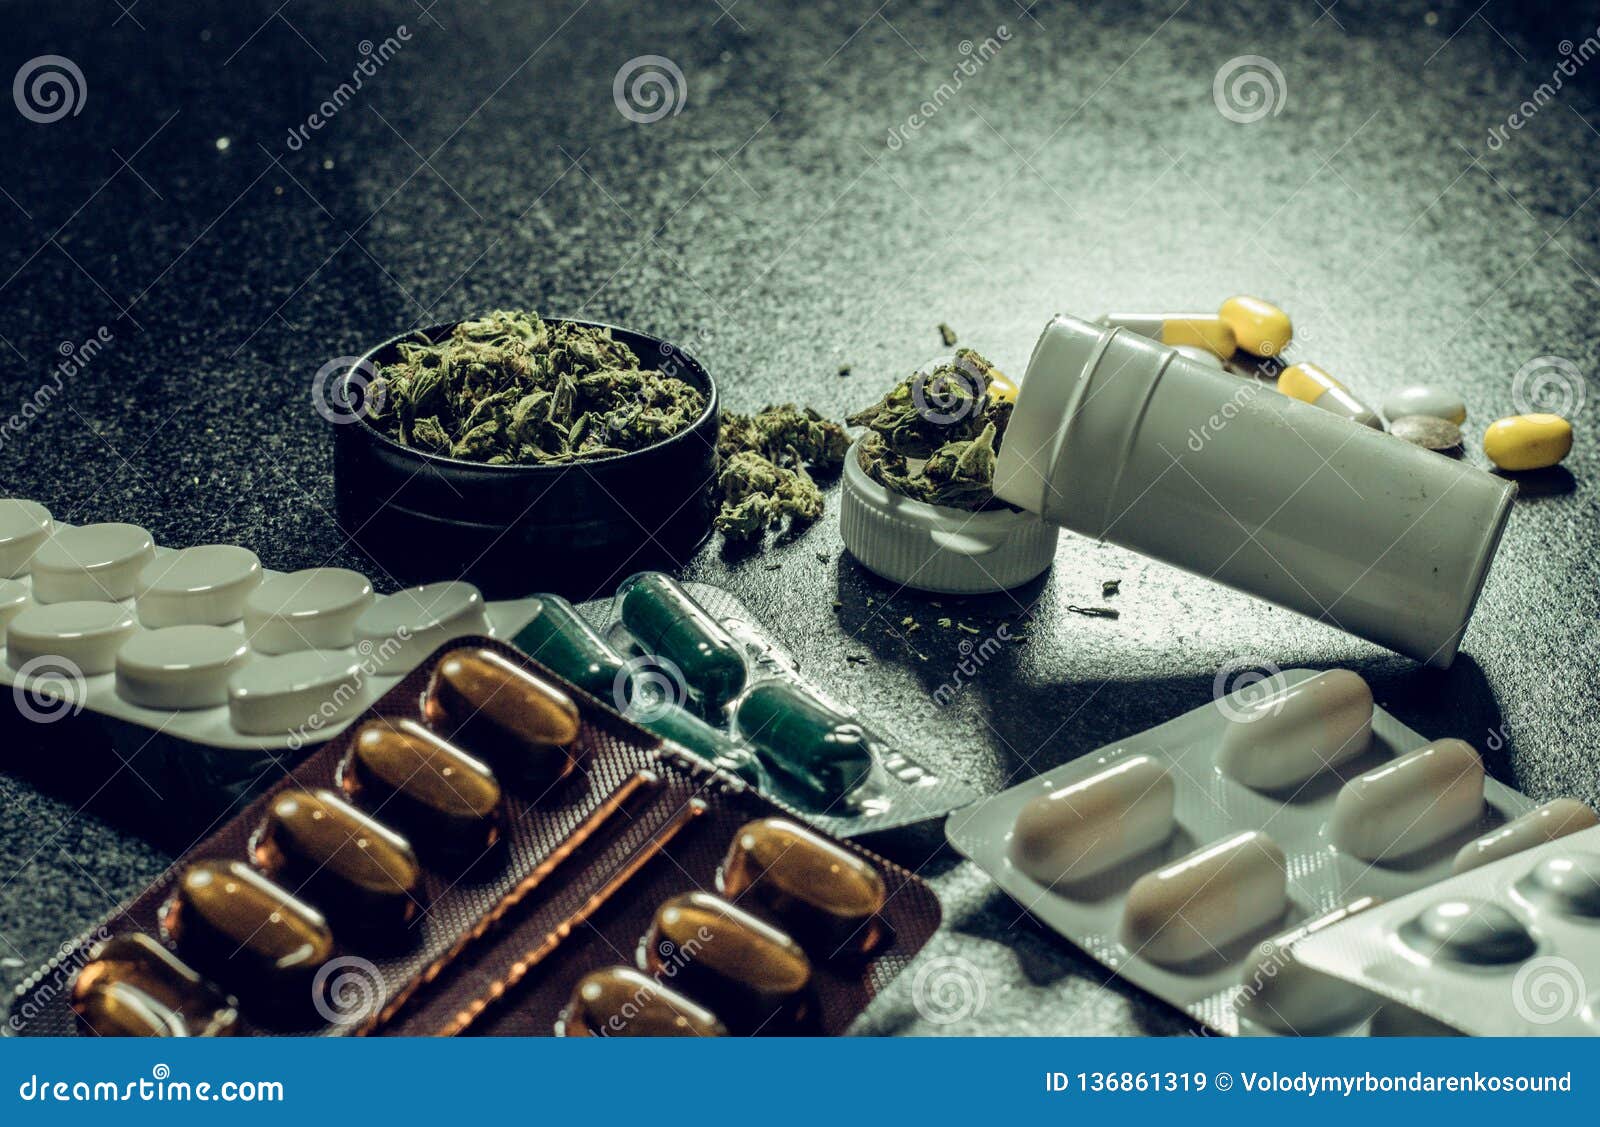 Таблетки из марихуаны как в каком корме есть конопли